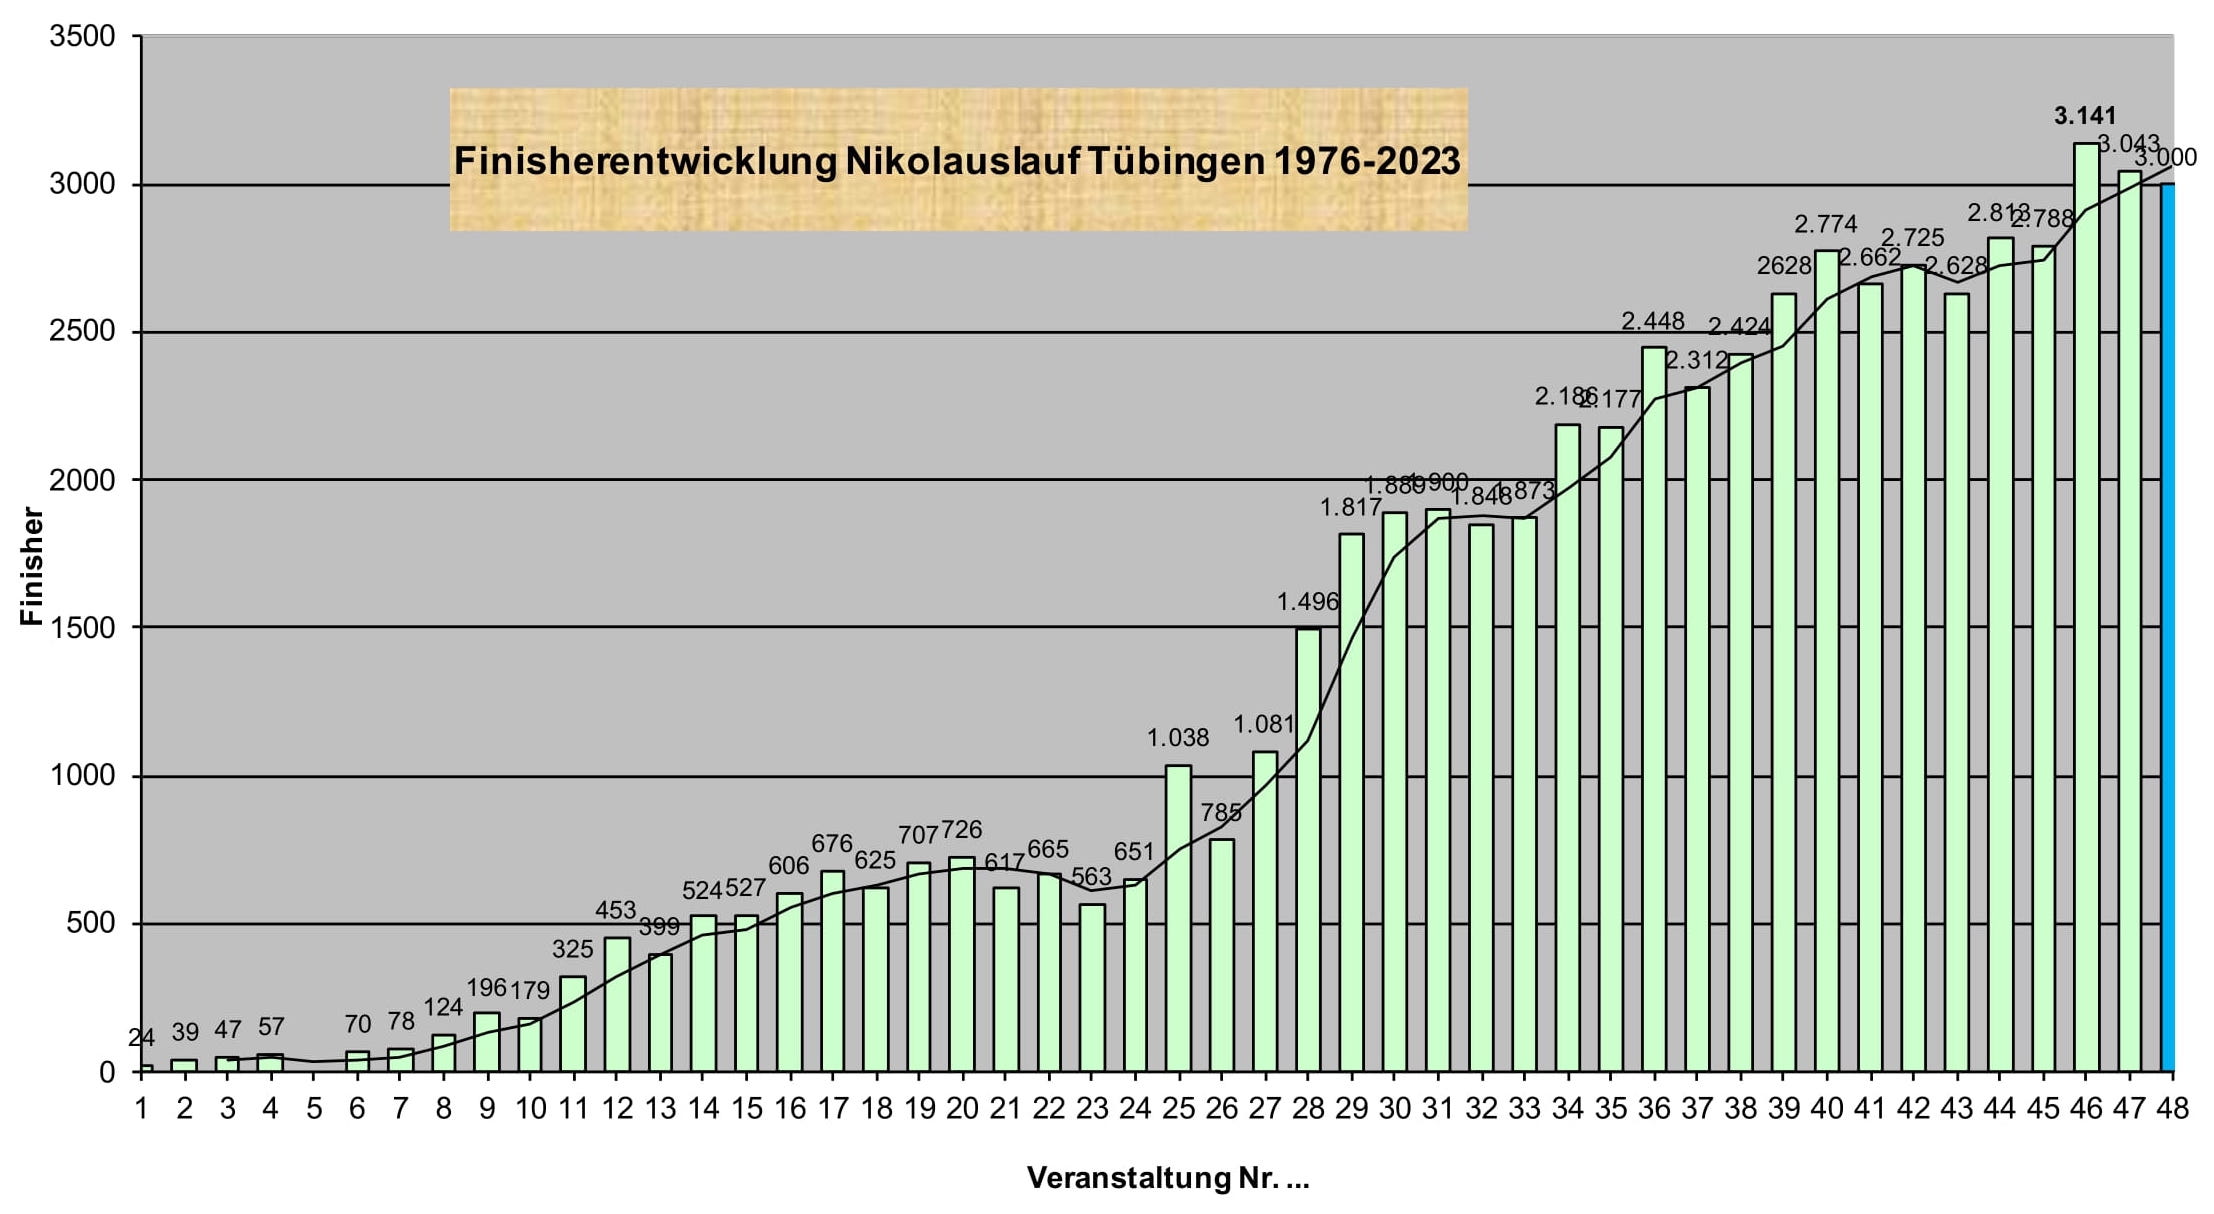 Nikolauslauf Tübingen Statistik Finisherentwicklung